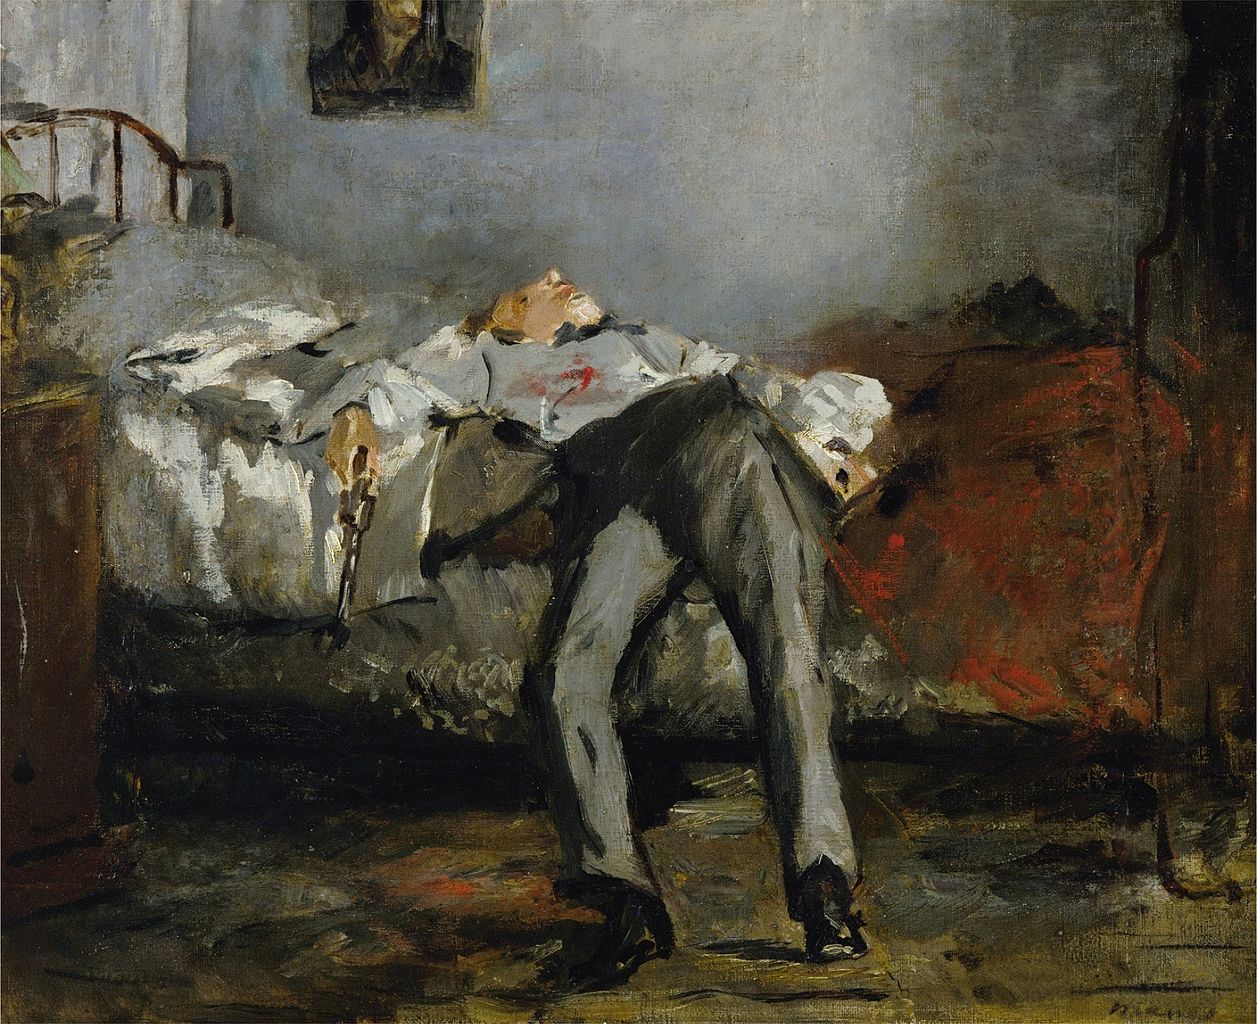 Le Suicidé, painting by Édouard Manet